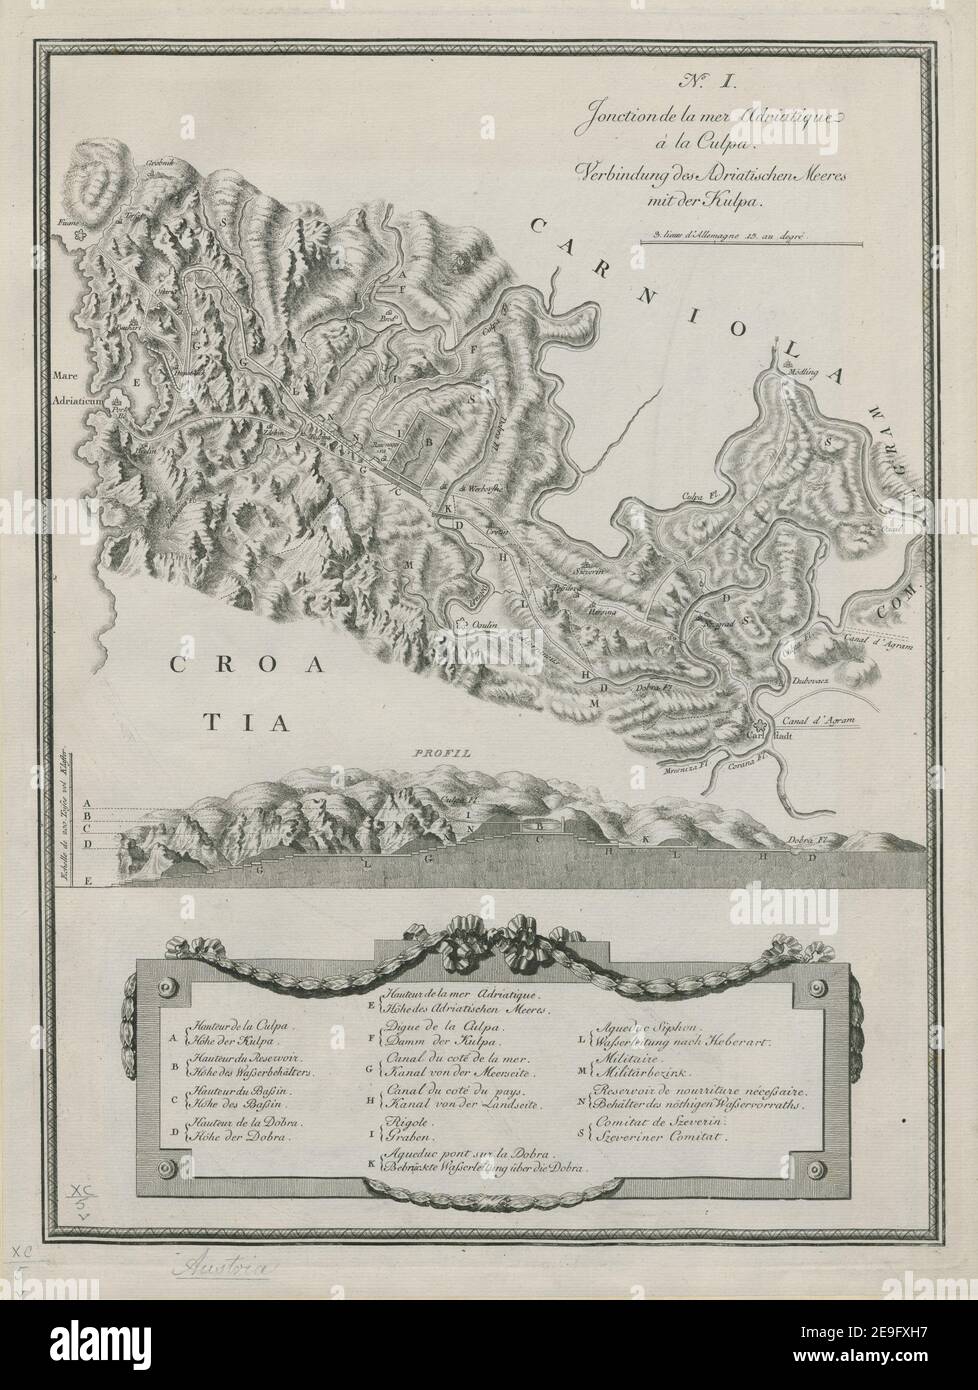 N.o I. Jonction de la mer Adriatique aÃÄ la Culpa. = Verbindung des Adriatischen Meeres mit der Kulpa. Author  Maire, F. J. 90.5.5. Place of publication: [Vienna] Publisher: [Sortie aux fraix de M.rs FreÃÅd. Bargum , Comp.ie Banquiers privil: de S. M. I. R. A. aÃÄ Vienne] Date of publication: [1786.]  Item type: 1 map Medium: copperplate engraving Dimensions: 35 x 37 cm, on sheet 54 x 41 cm  Former owner: George III, King of Great Britain, 1738-1820 Stock Photo